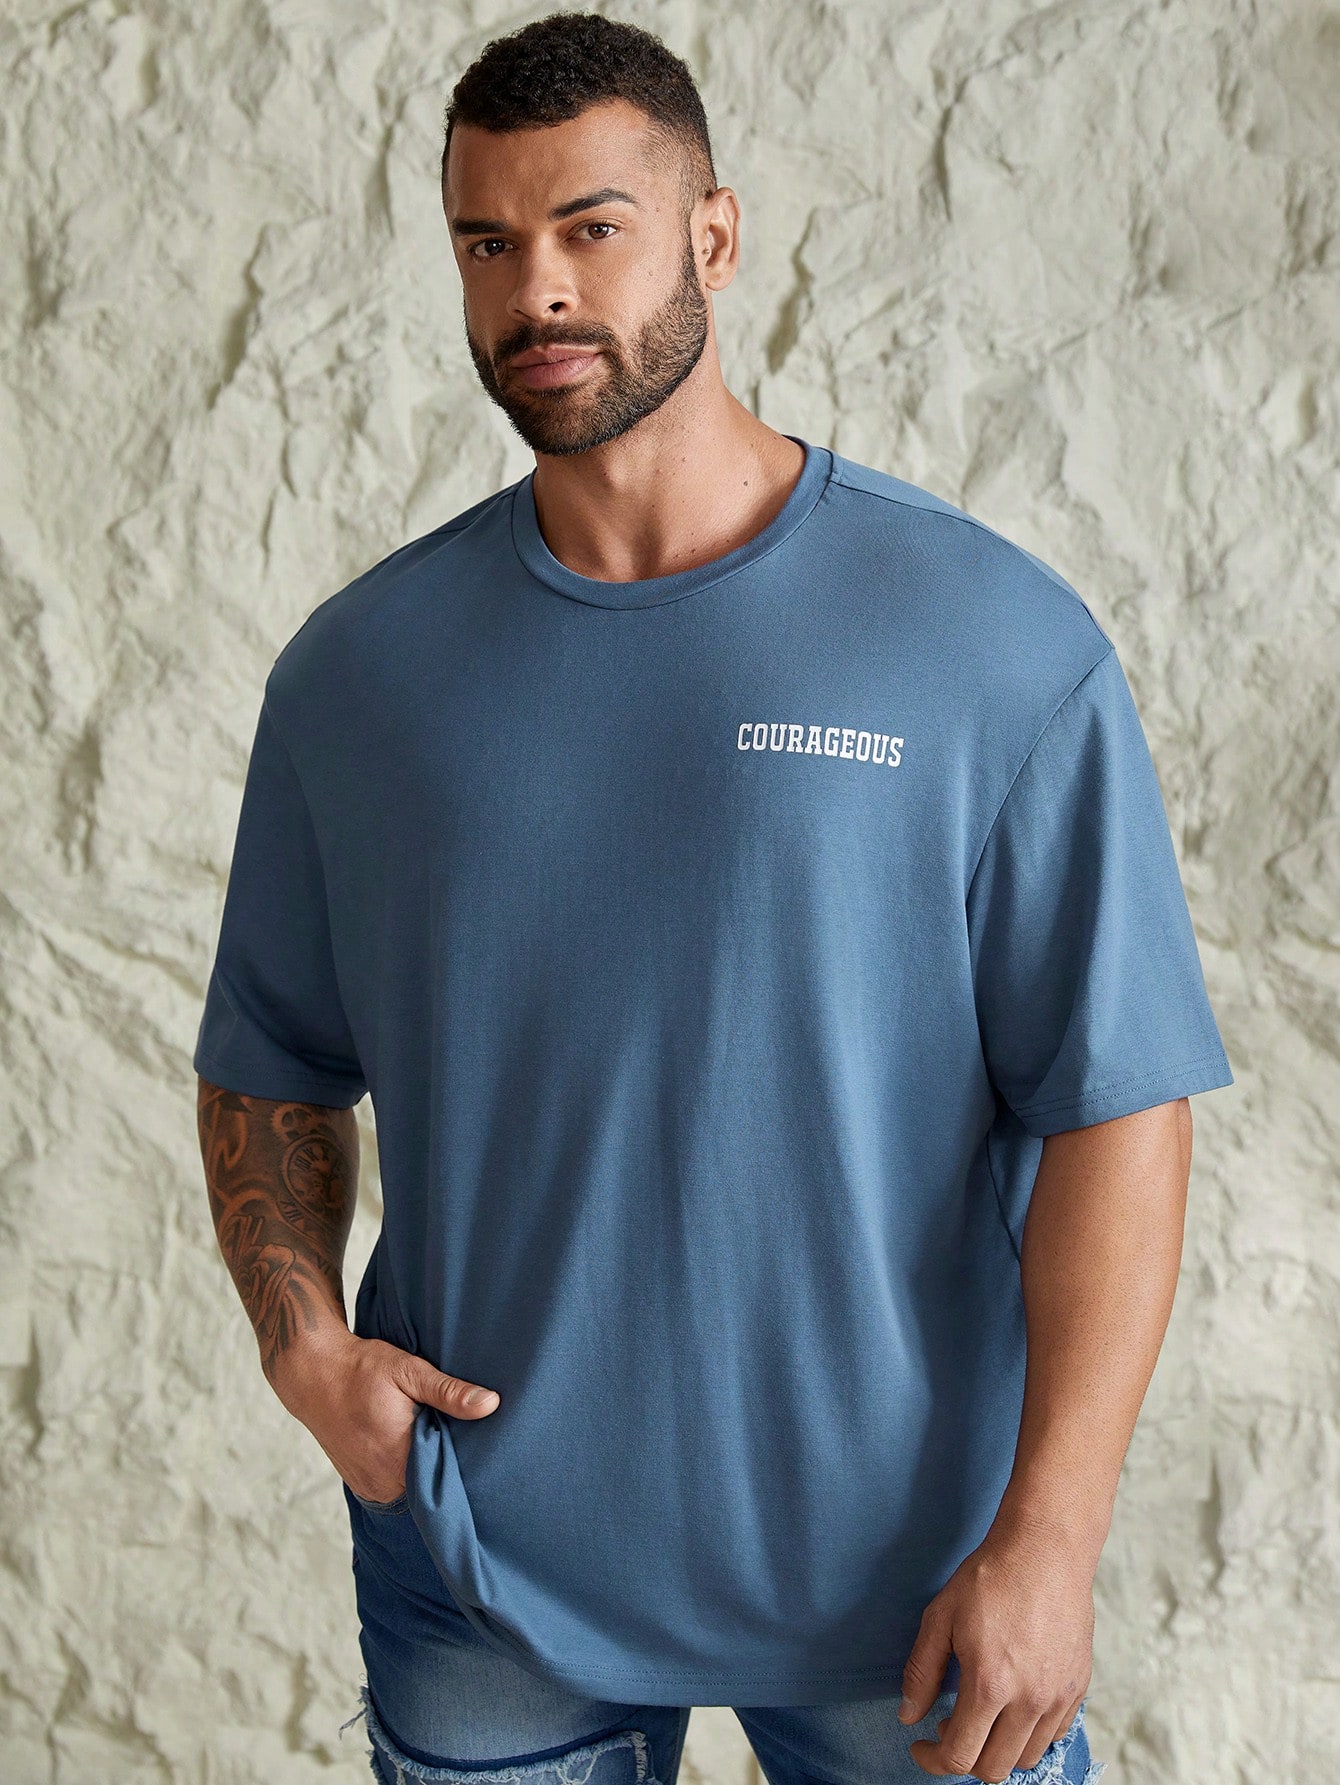 Мужская повседневная футболка с коротким рукавом Manfinity Hypemode больших размеров с принтом слогана, синий мужская повседневная модная джинсовая рубашка больших размеров manfinity hypemode синий